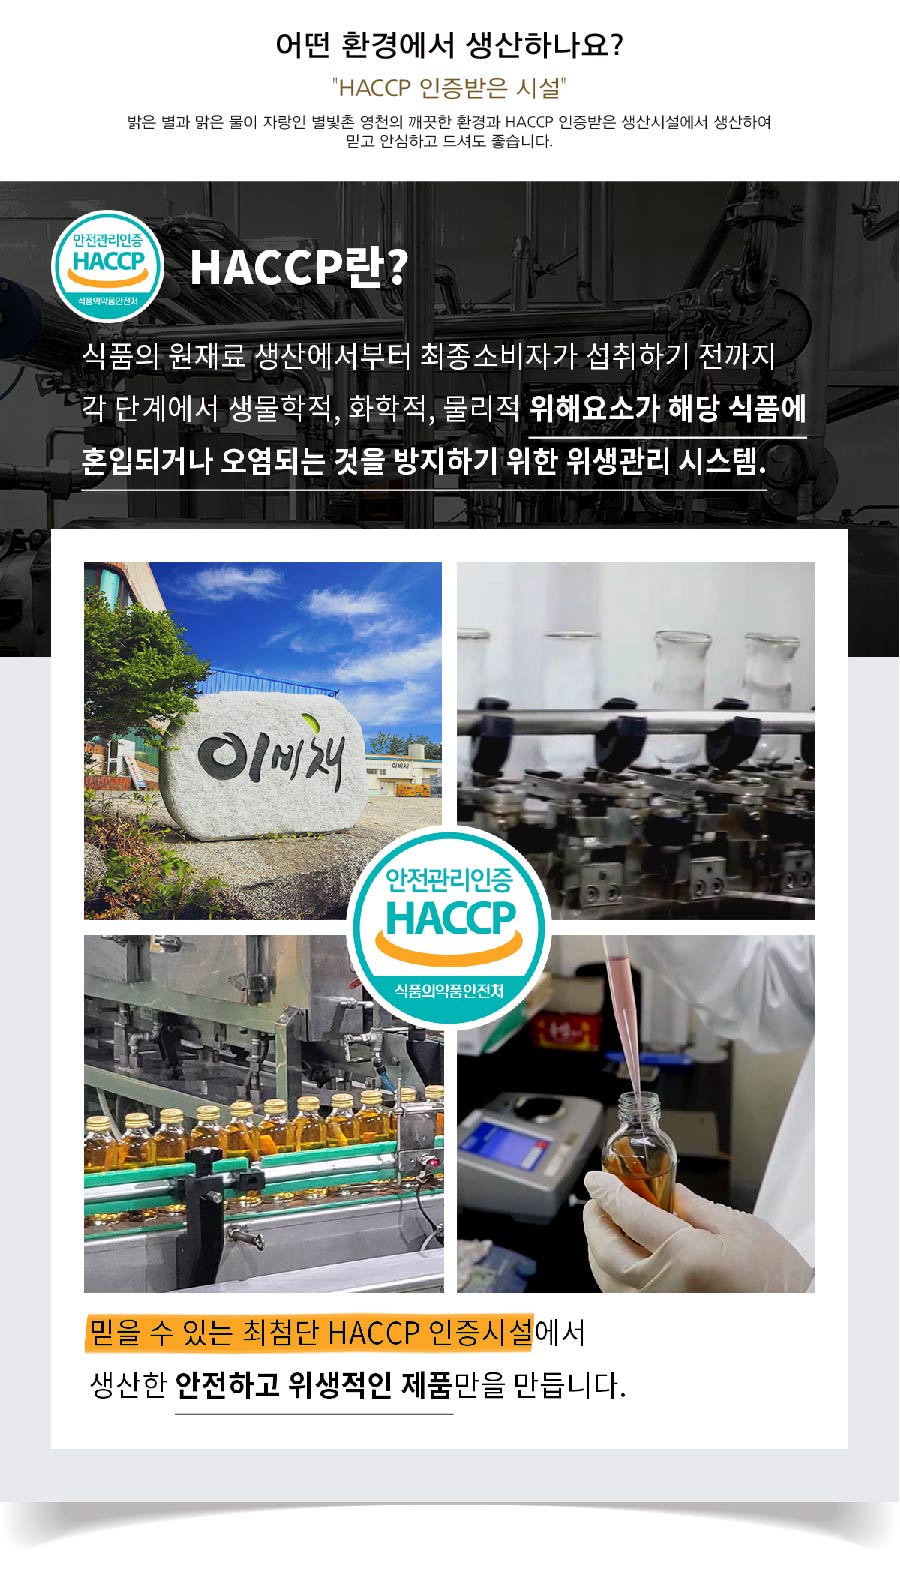 004-HACCP.jpg